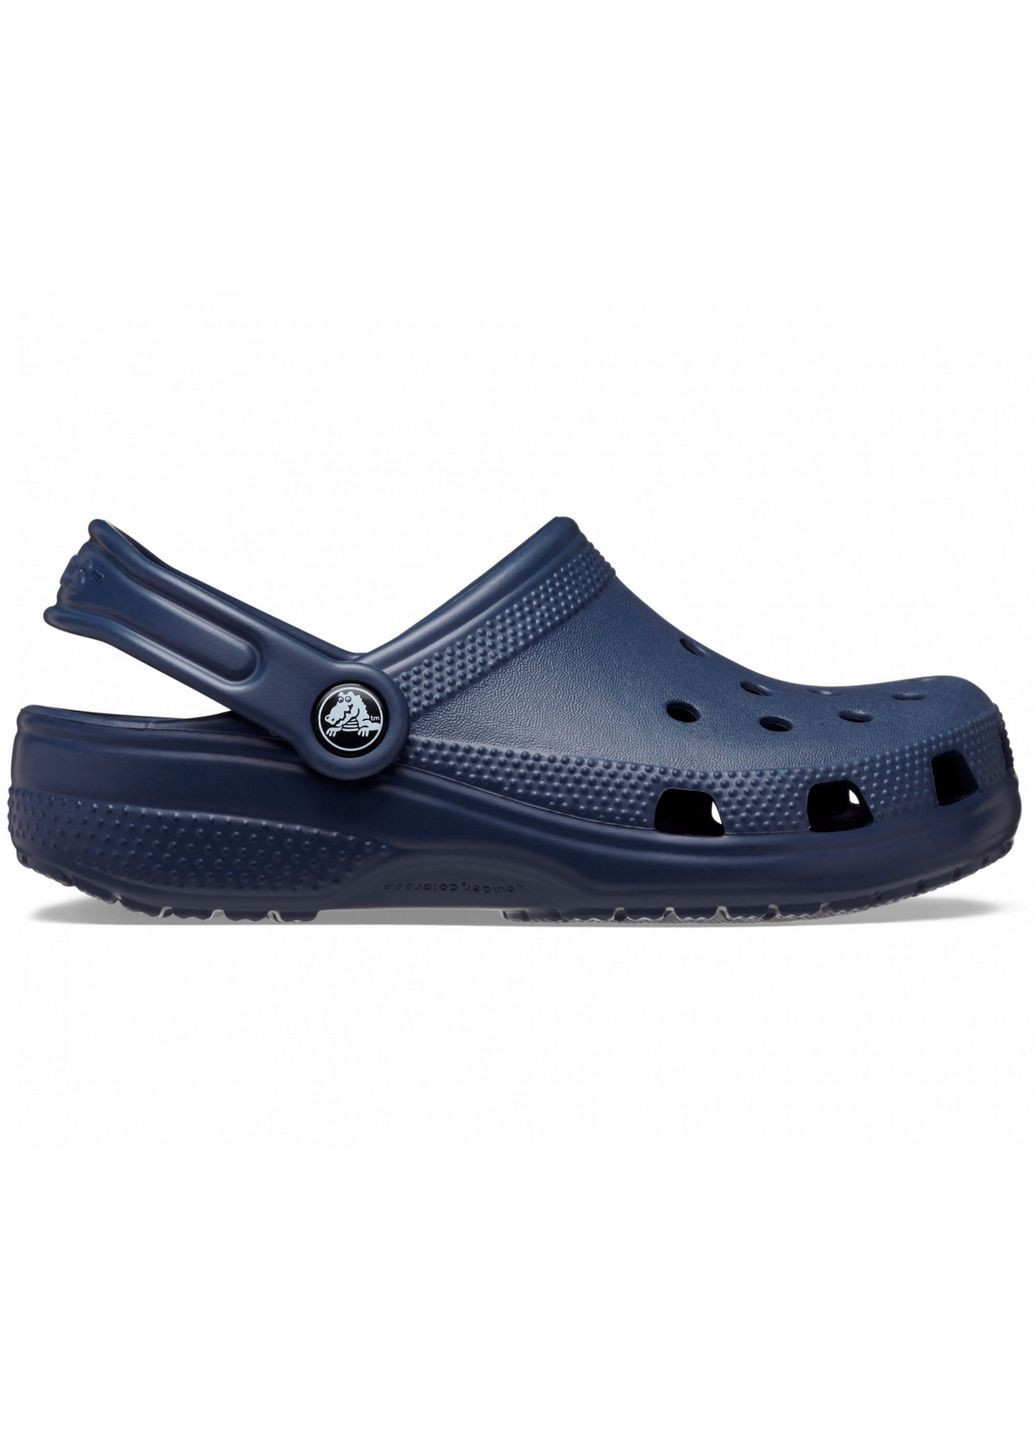 Синие сабо kids classic clog navy c11\28\18 см 206991 Crocs